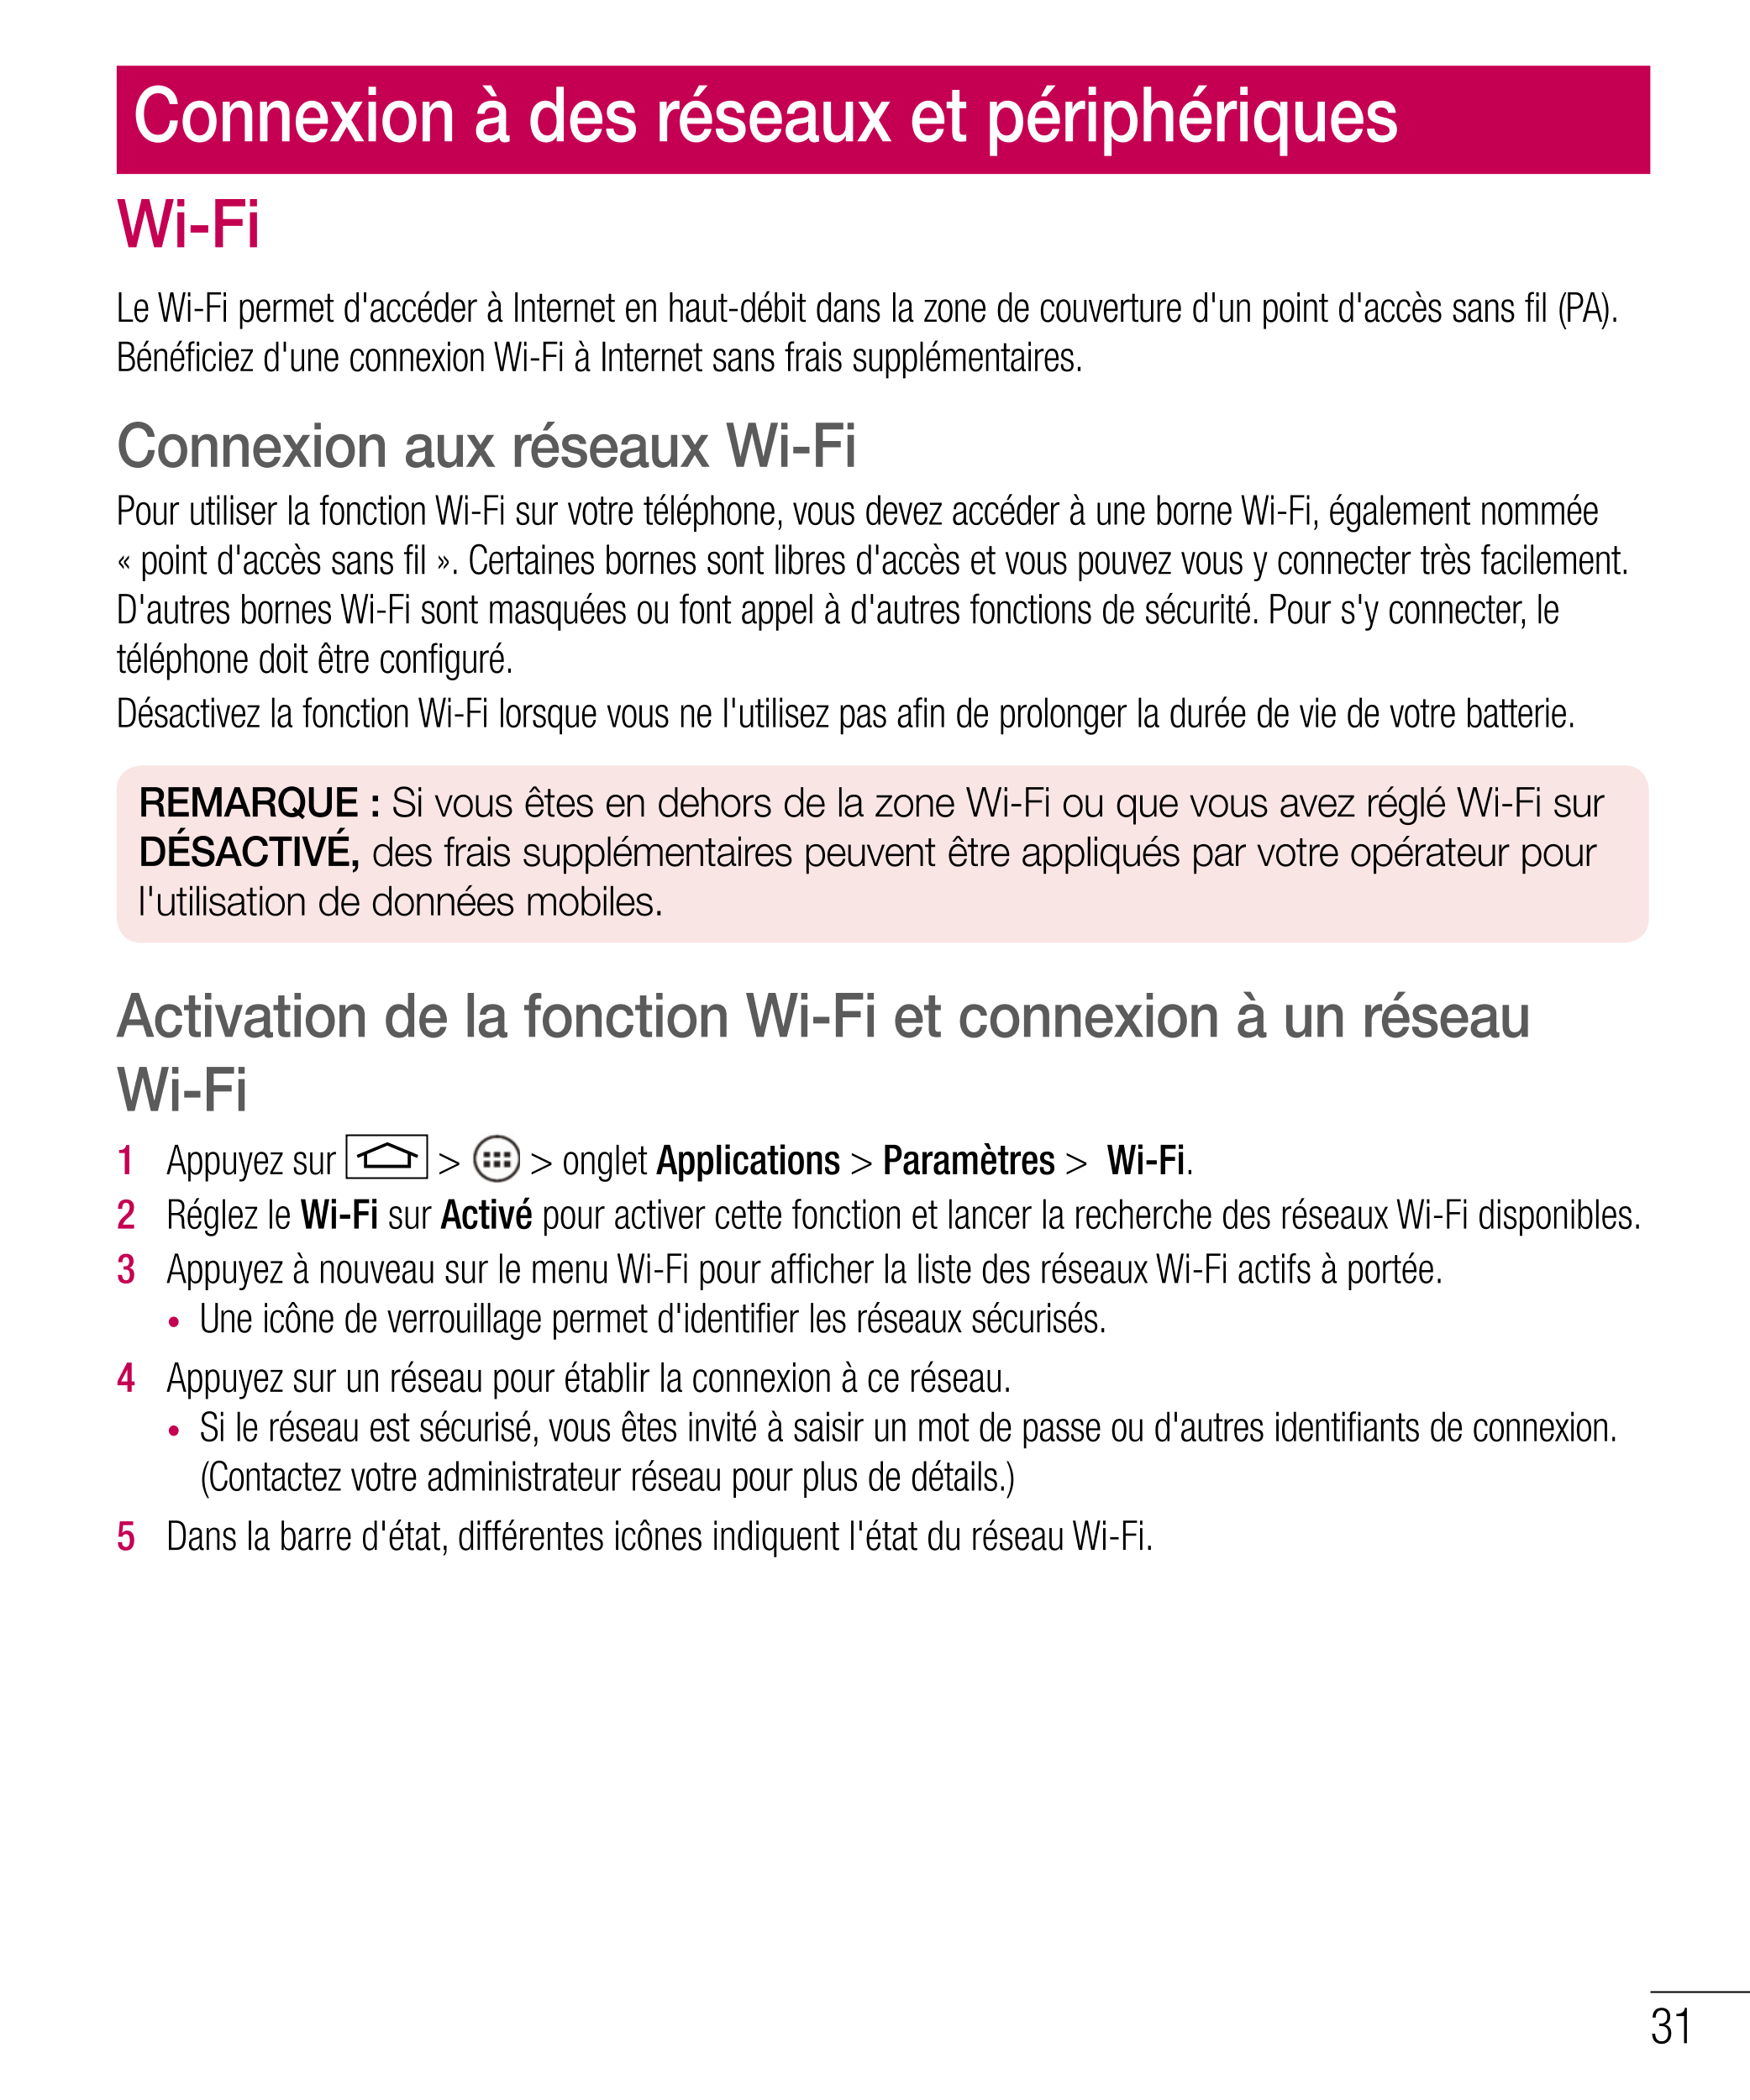 Connexion à des réseaux et périphériques
Wi-Fi
Le Wi-Fi permet d'accéder à Internet en haut-débit dans la zone de couverture d'u